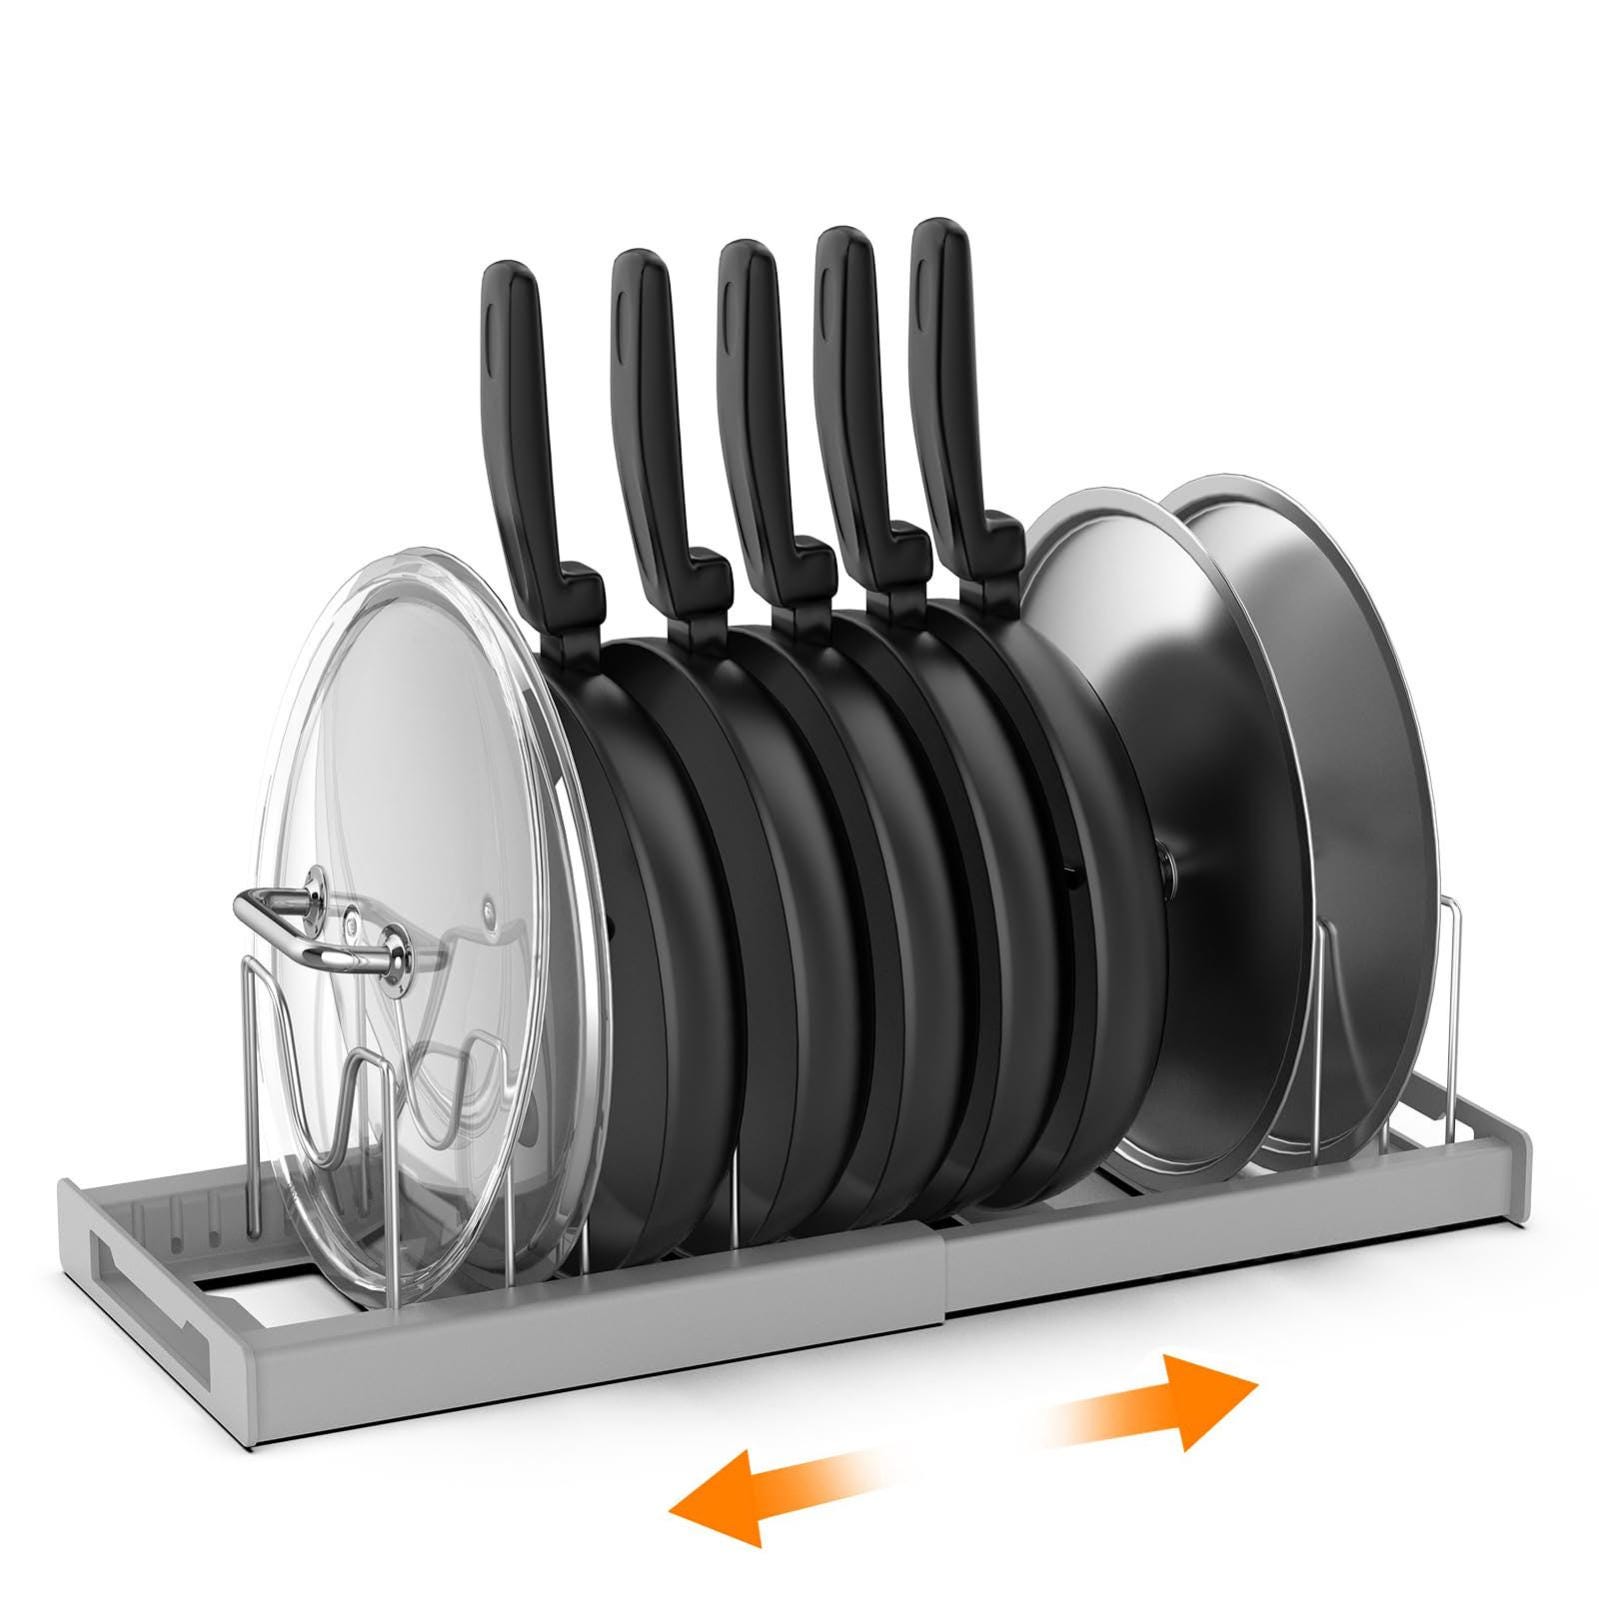 Support de couvercle de casserole, support de casserole extensible pour  tiroir, organisateur de casseroles avec 7 séparateurs réglables, gris